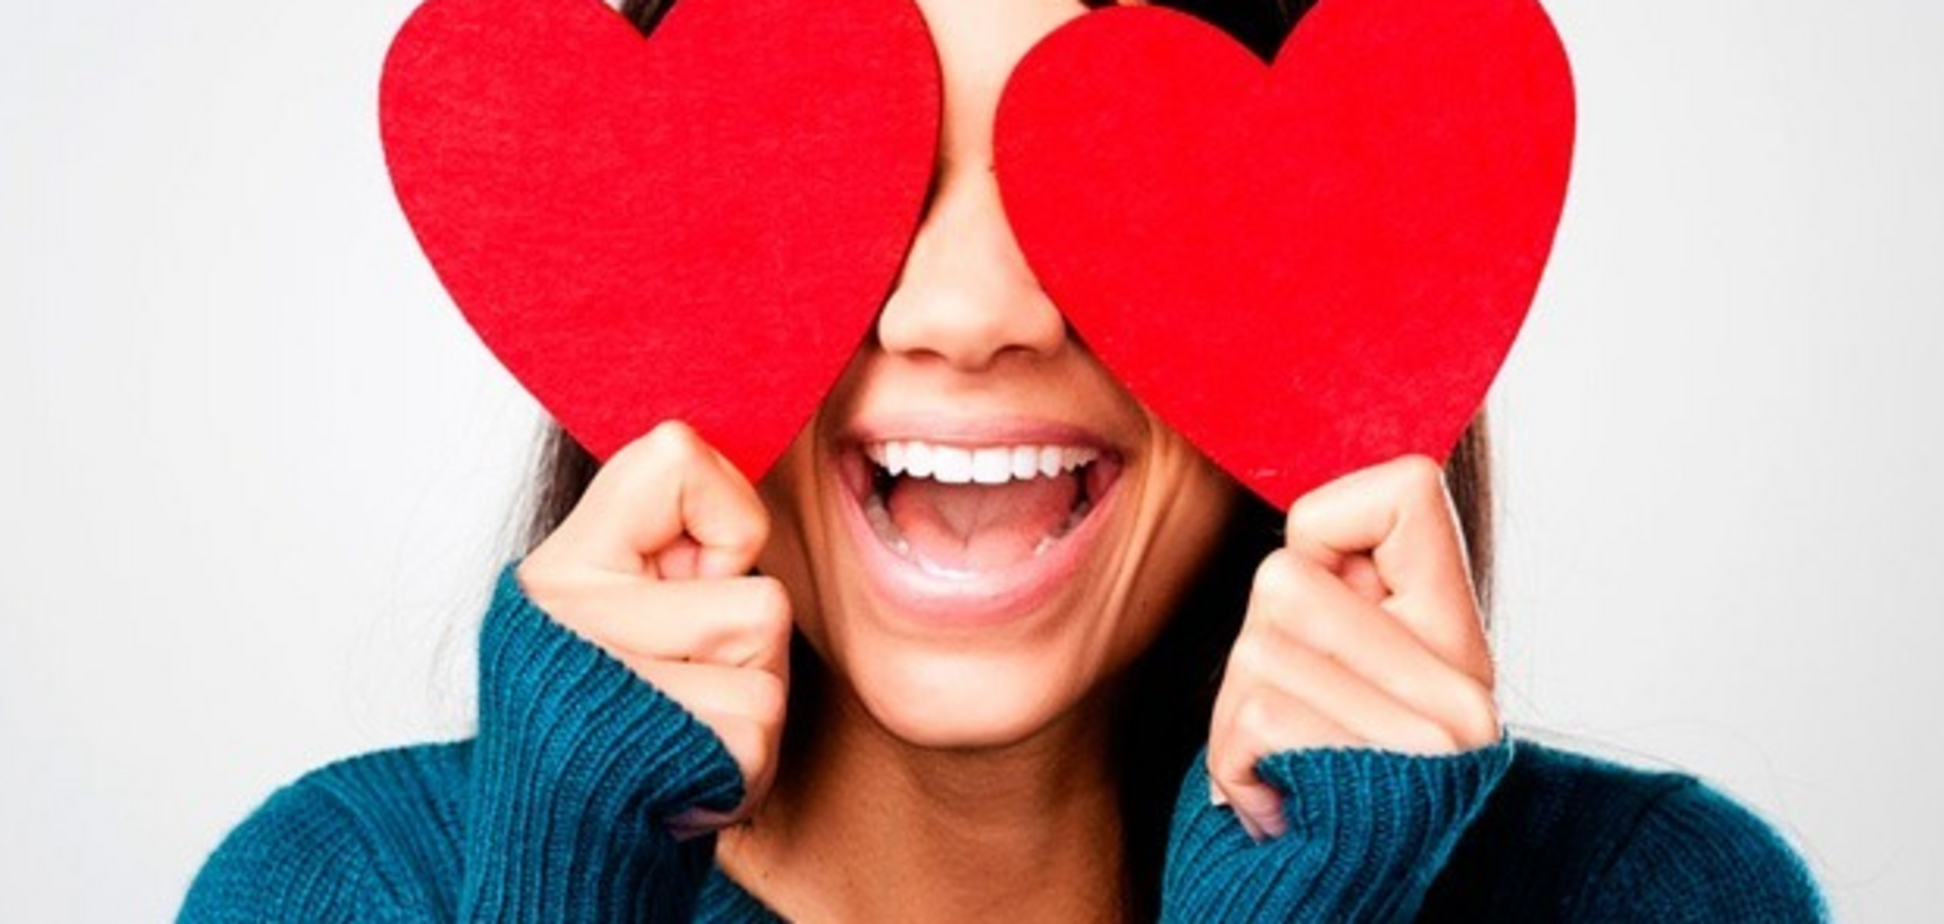 Як зрозуміти серйозність намірів: 4 вірних ознаки закоханості чоловіка